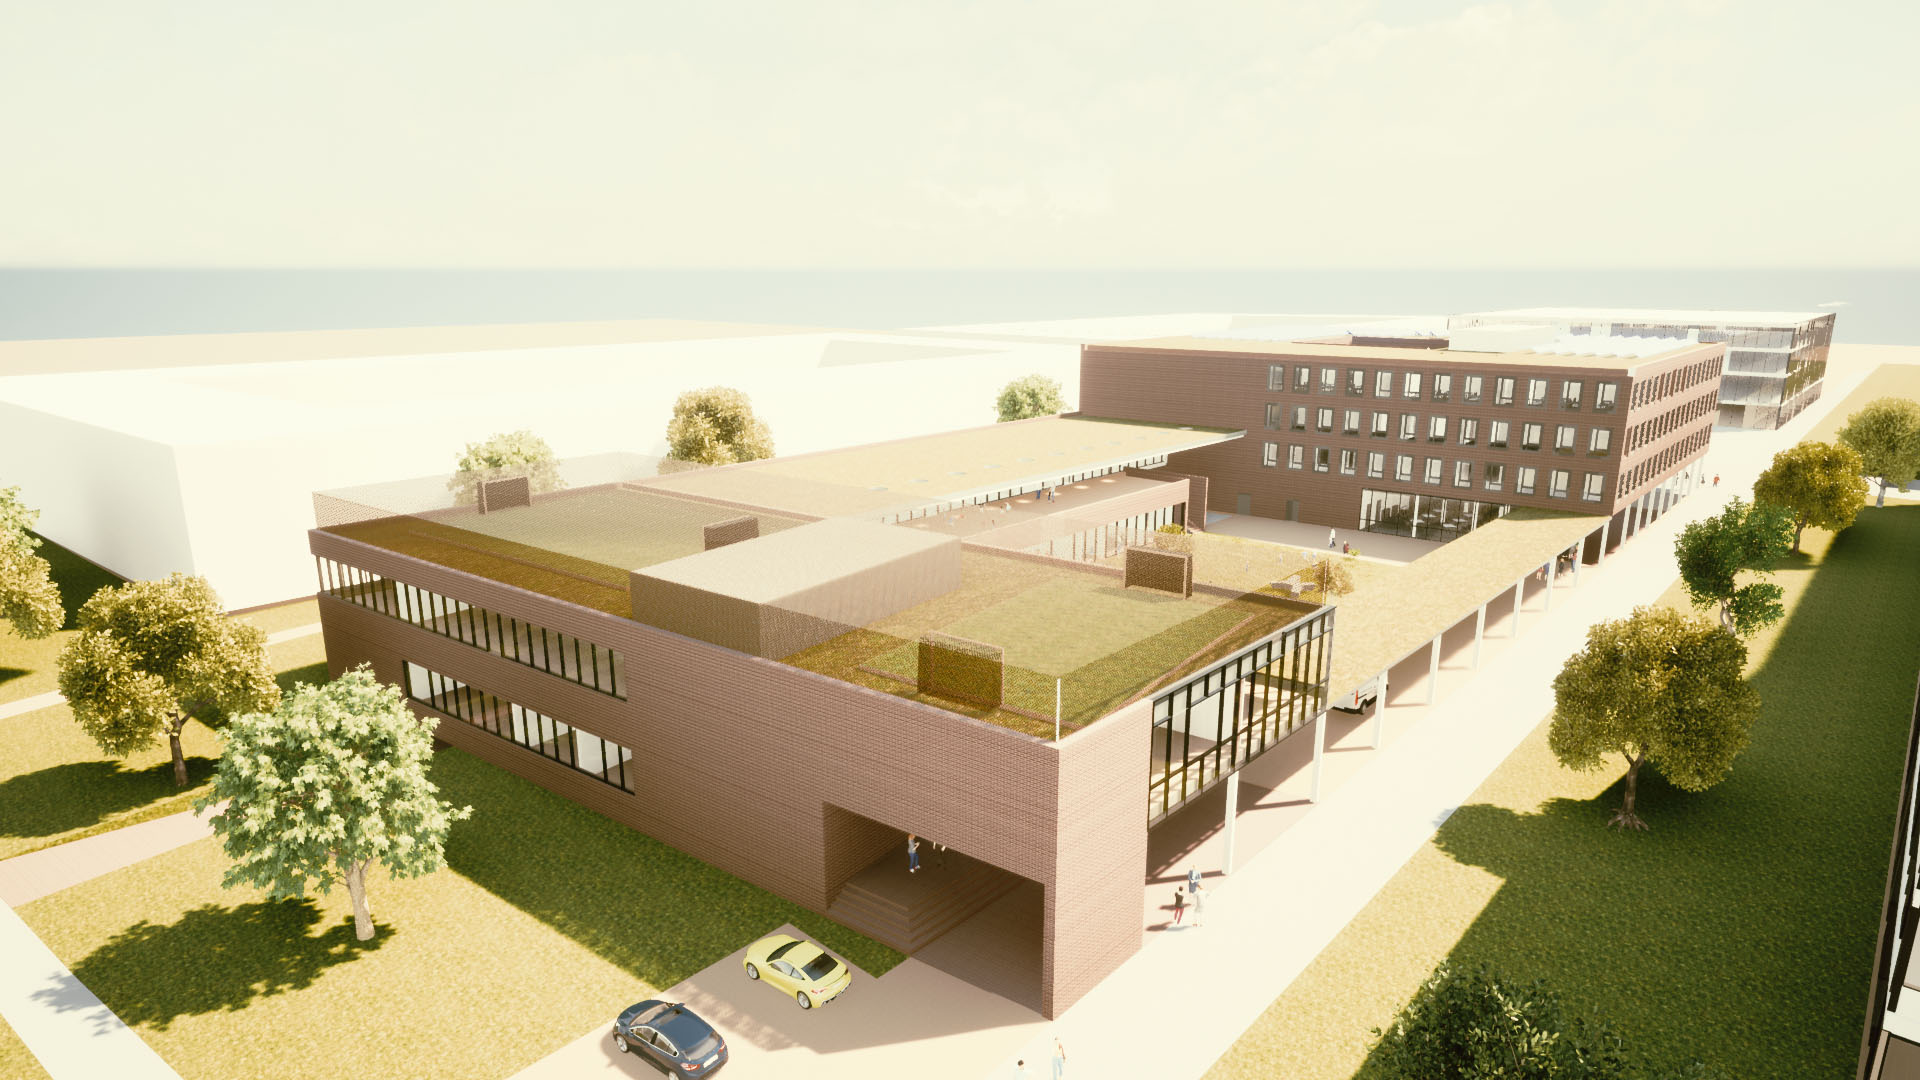 Ab August 2022 wird im Augsburg Innovationspark eine Kita mit 99 Betreuungsplätzen errichtet.